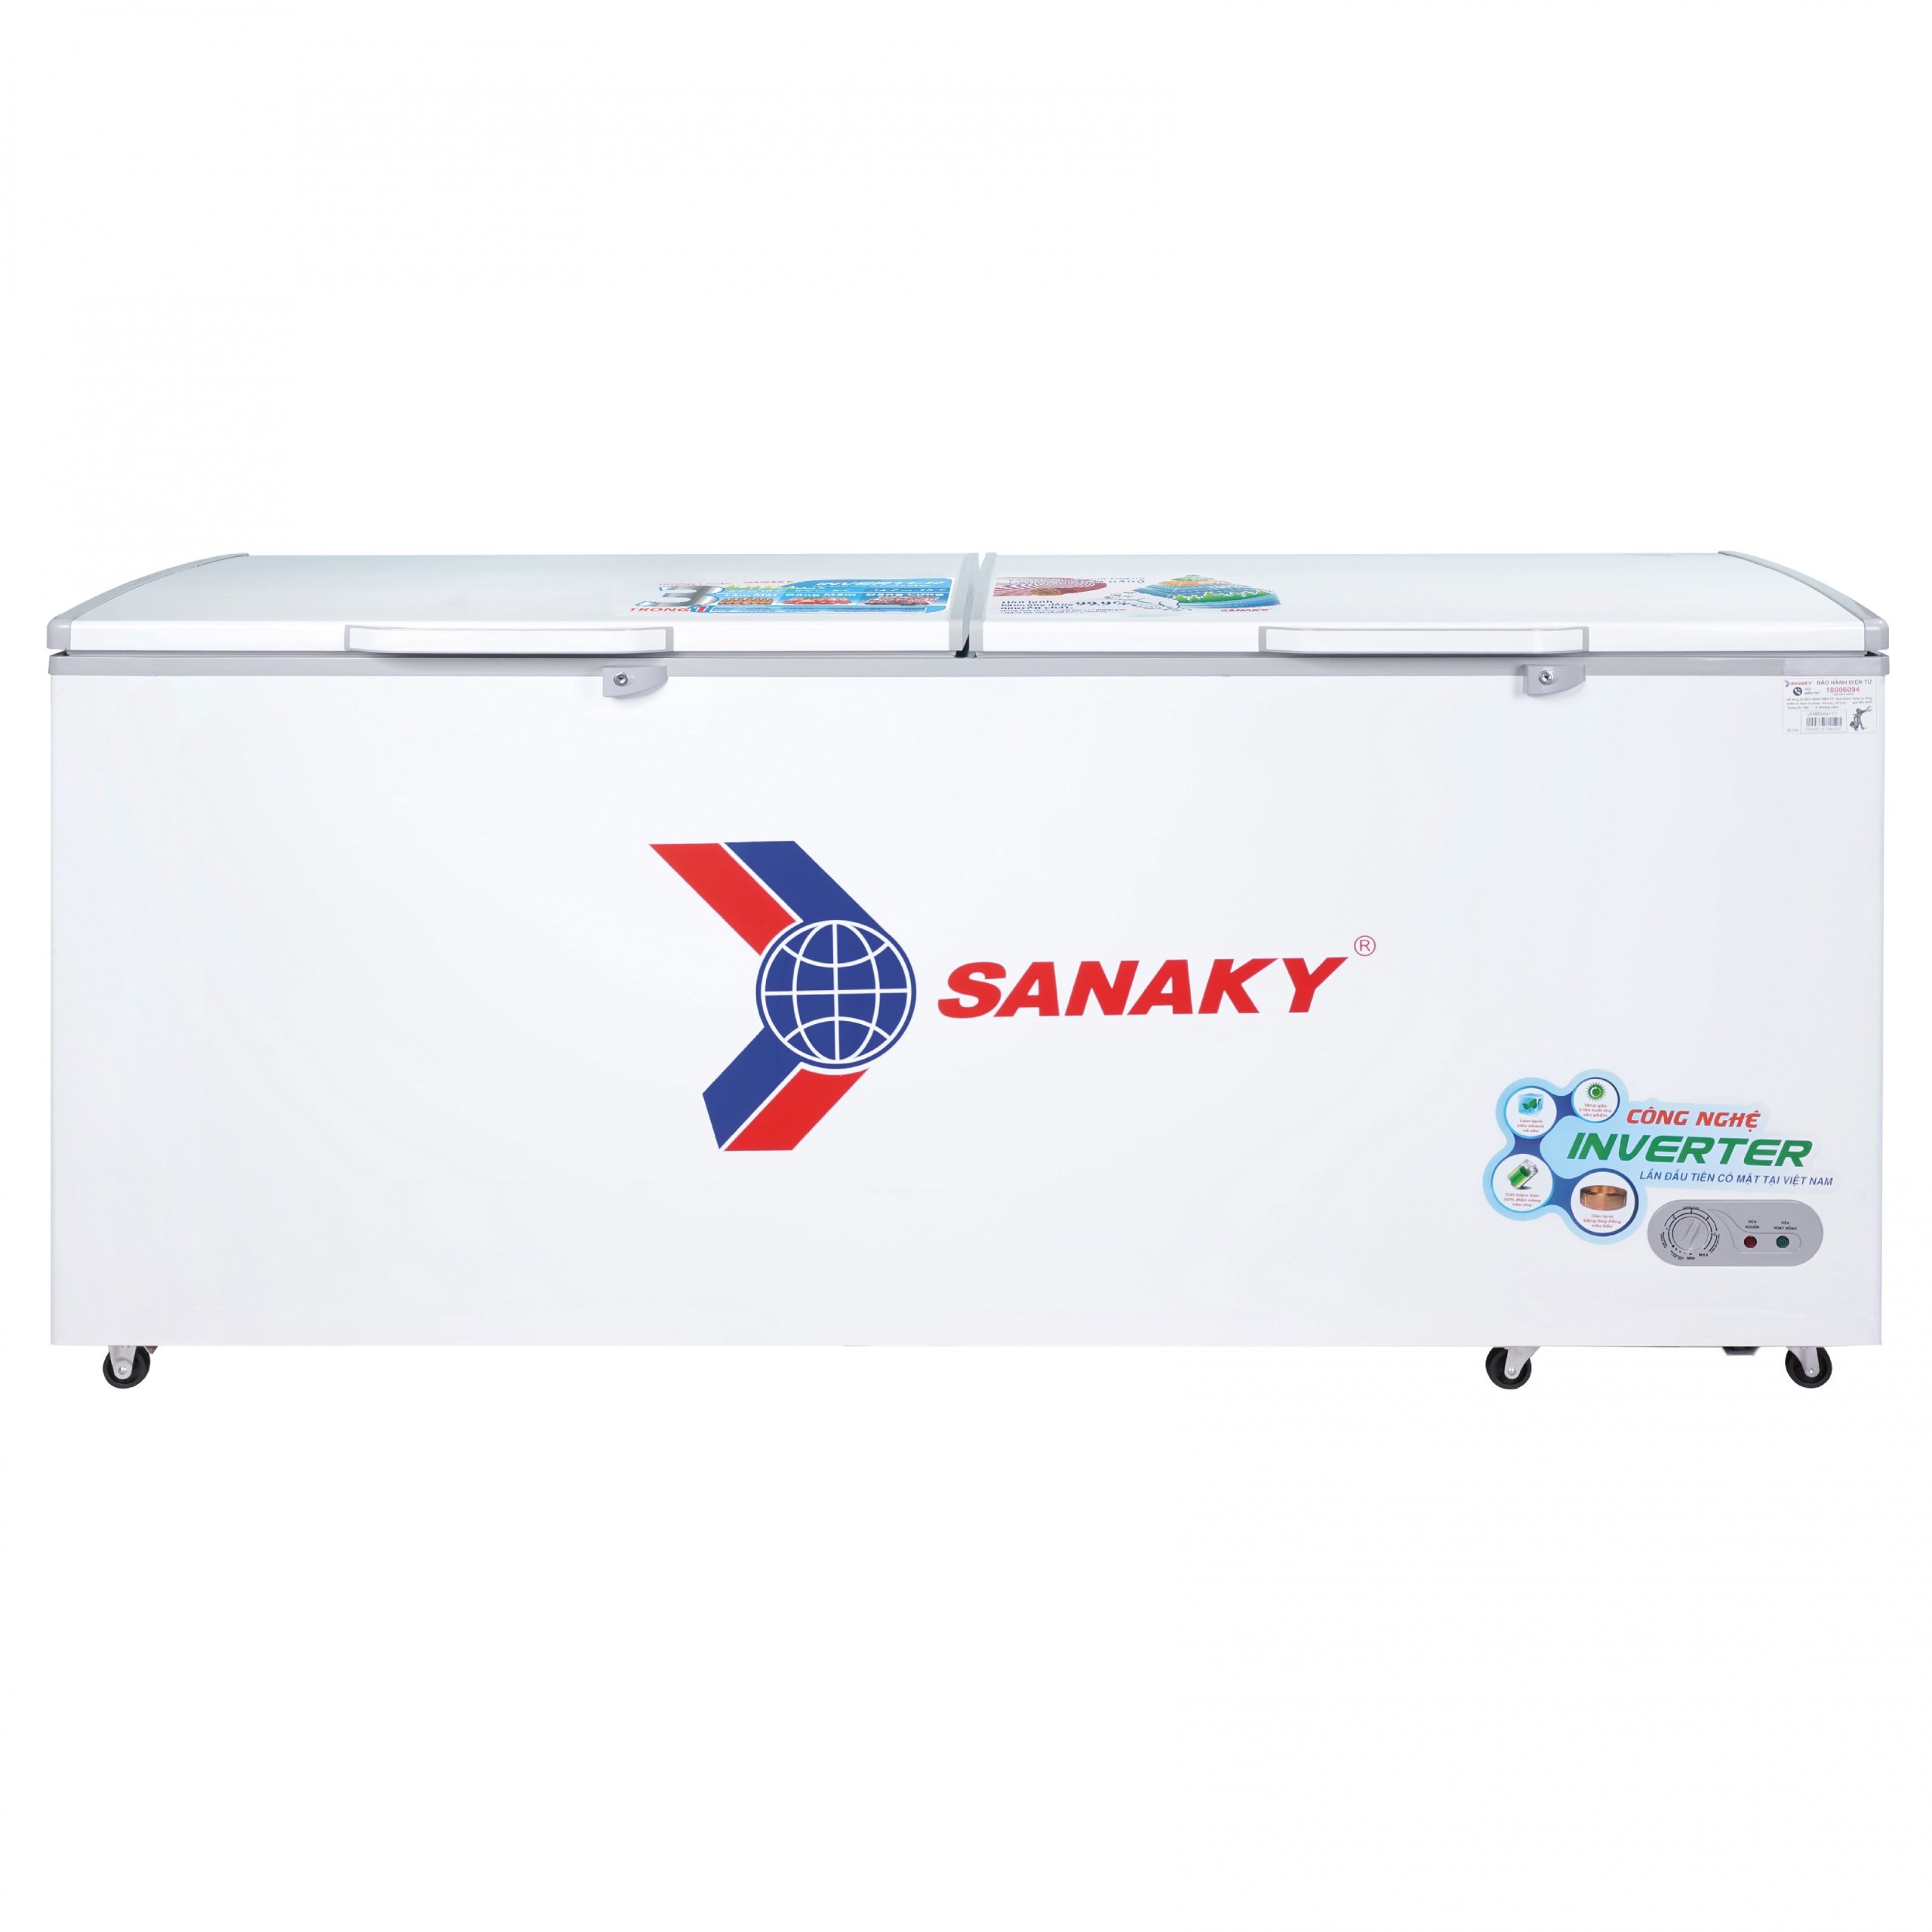 Tủ đông sanaky 2 nắp mở INVERTER 860L VH-8699HY3 dàn lạnh đồng - trả góp  tại Điện máy Lê Triều